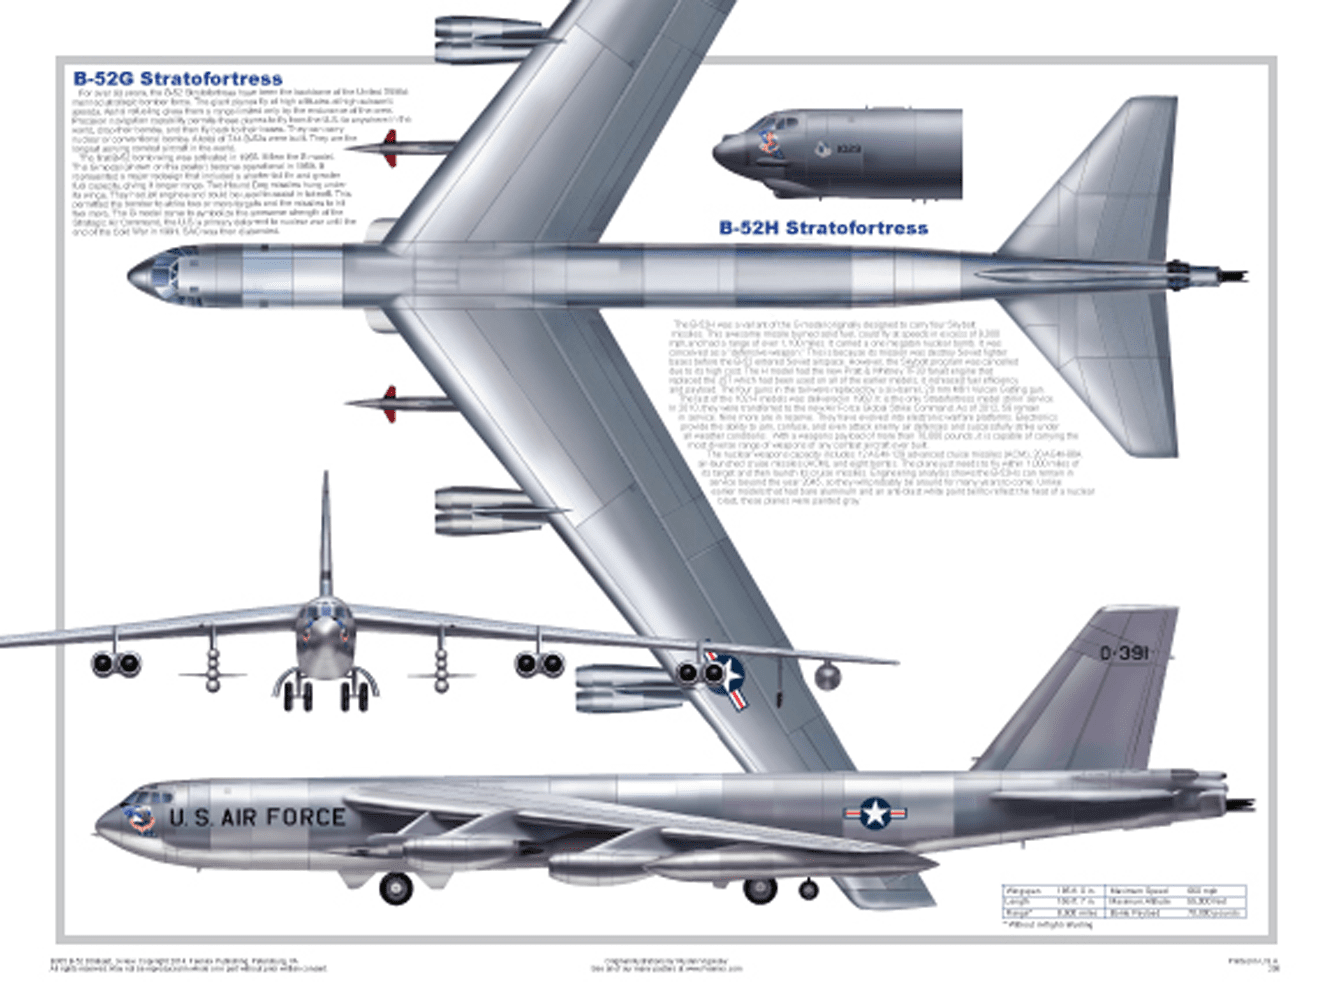 Boeing b-52g/h stratofortress боинг b-52g/h «стратофортресс». энциклопедия современной военной авиации 1945-2002: часть 1. самолеты